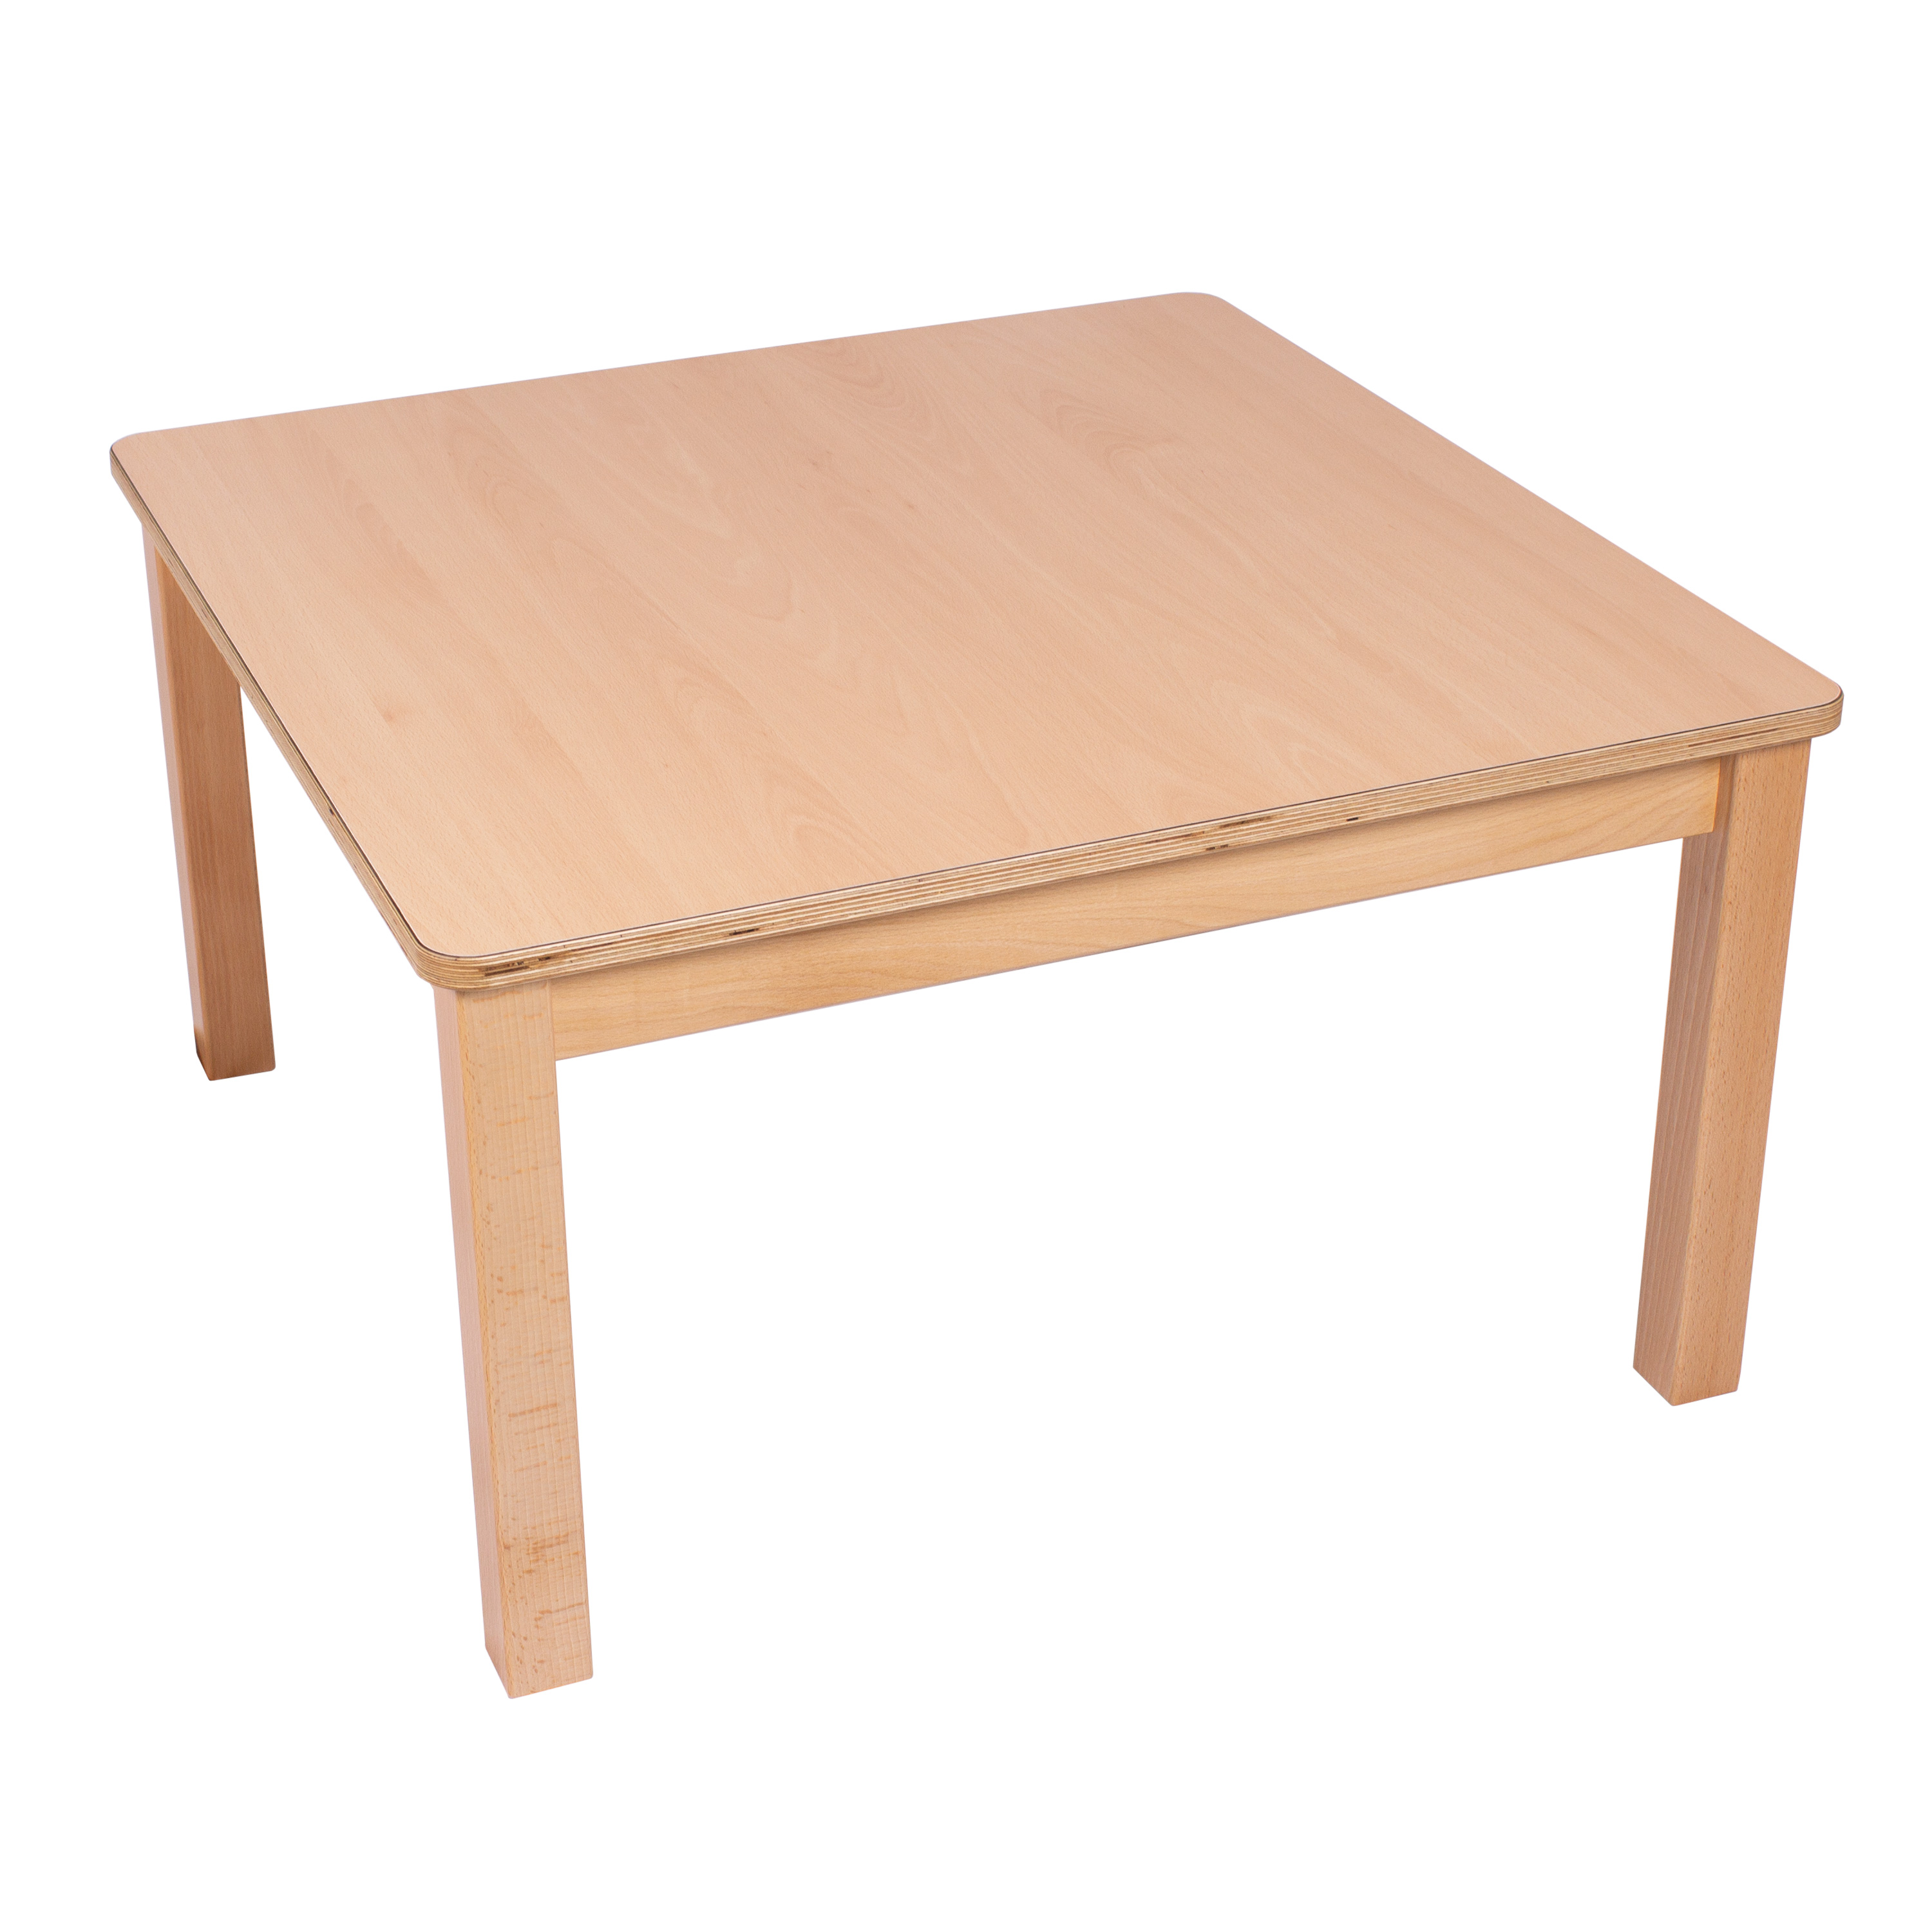 U3-Quadrat-Tisch 80 x 80 cm, Ecken gerundet, H: 34 cm